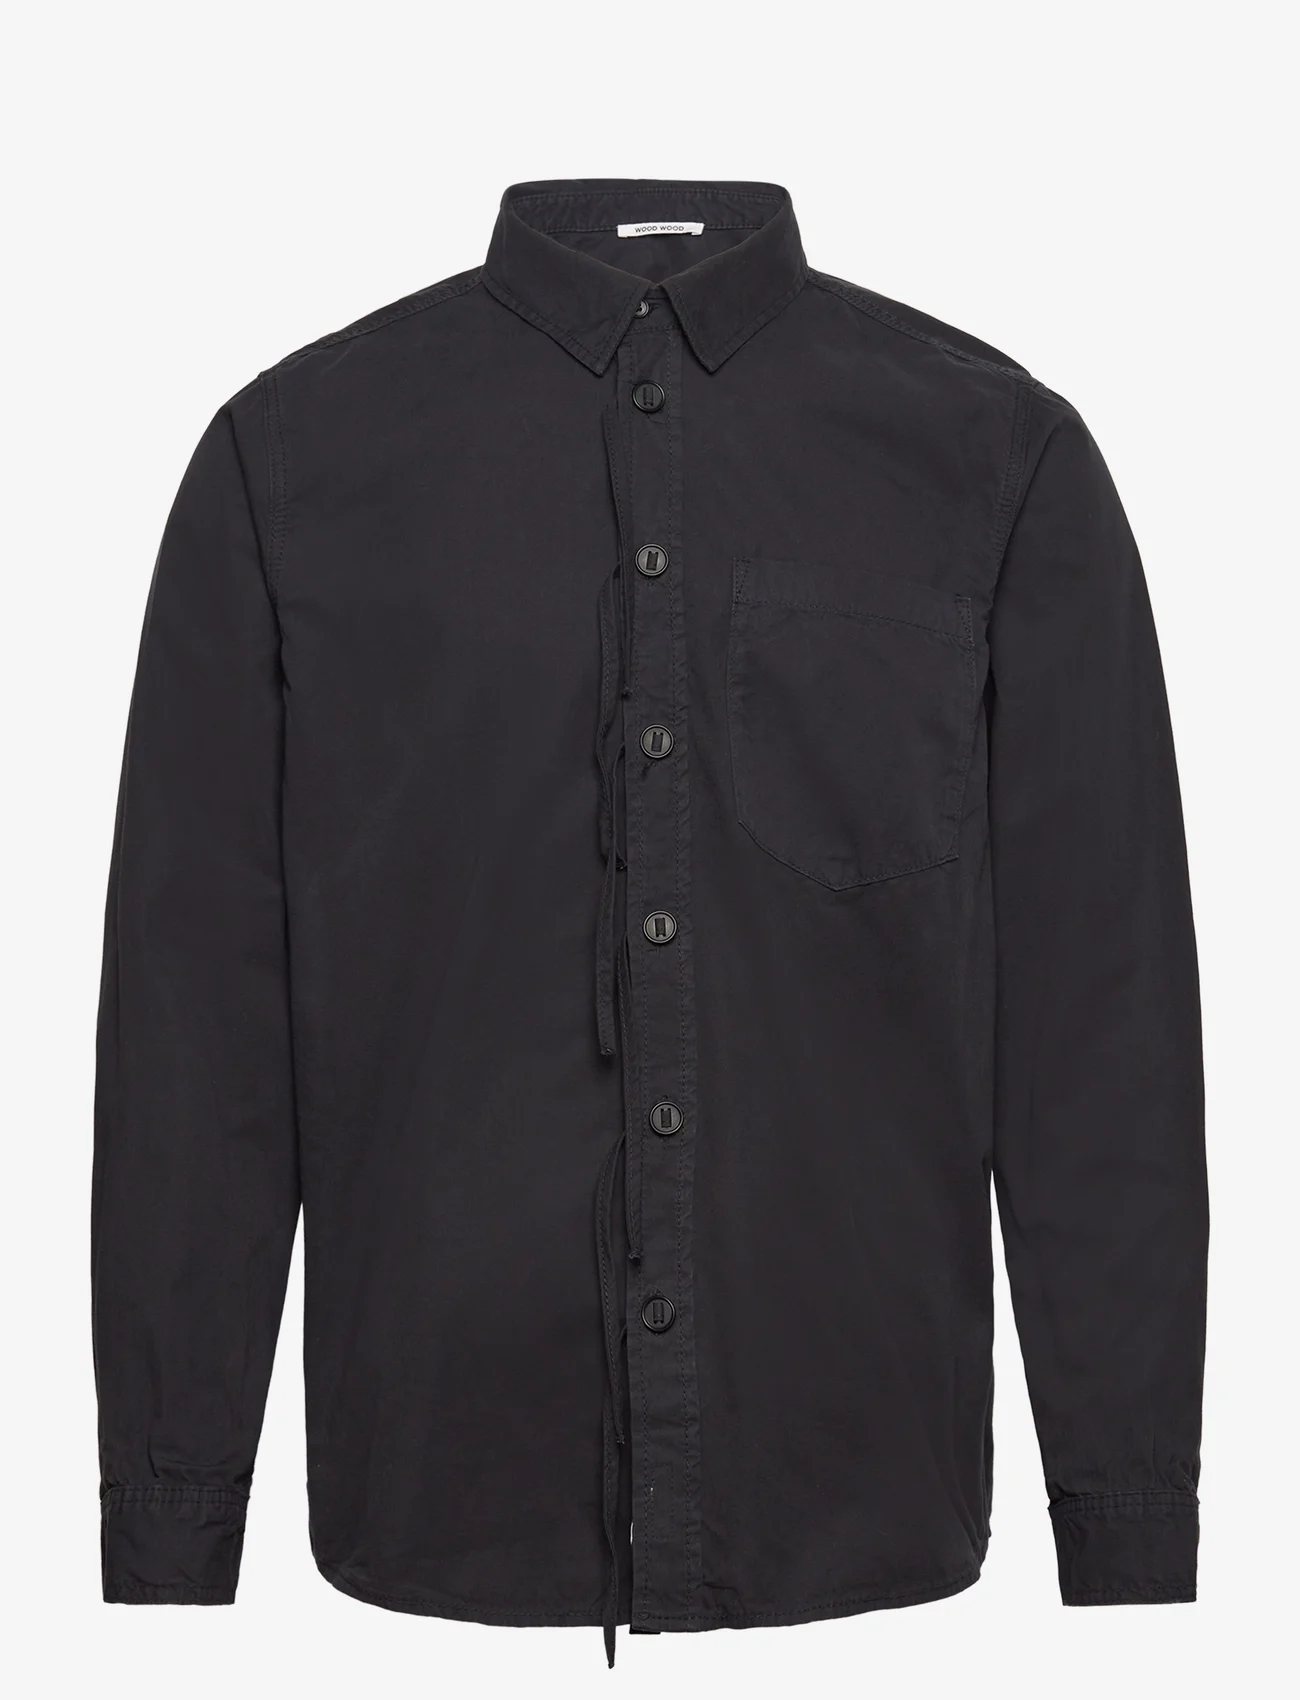 Wood Wood - Aster Shirt - laisvalaikio marškiniai - black - 0